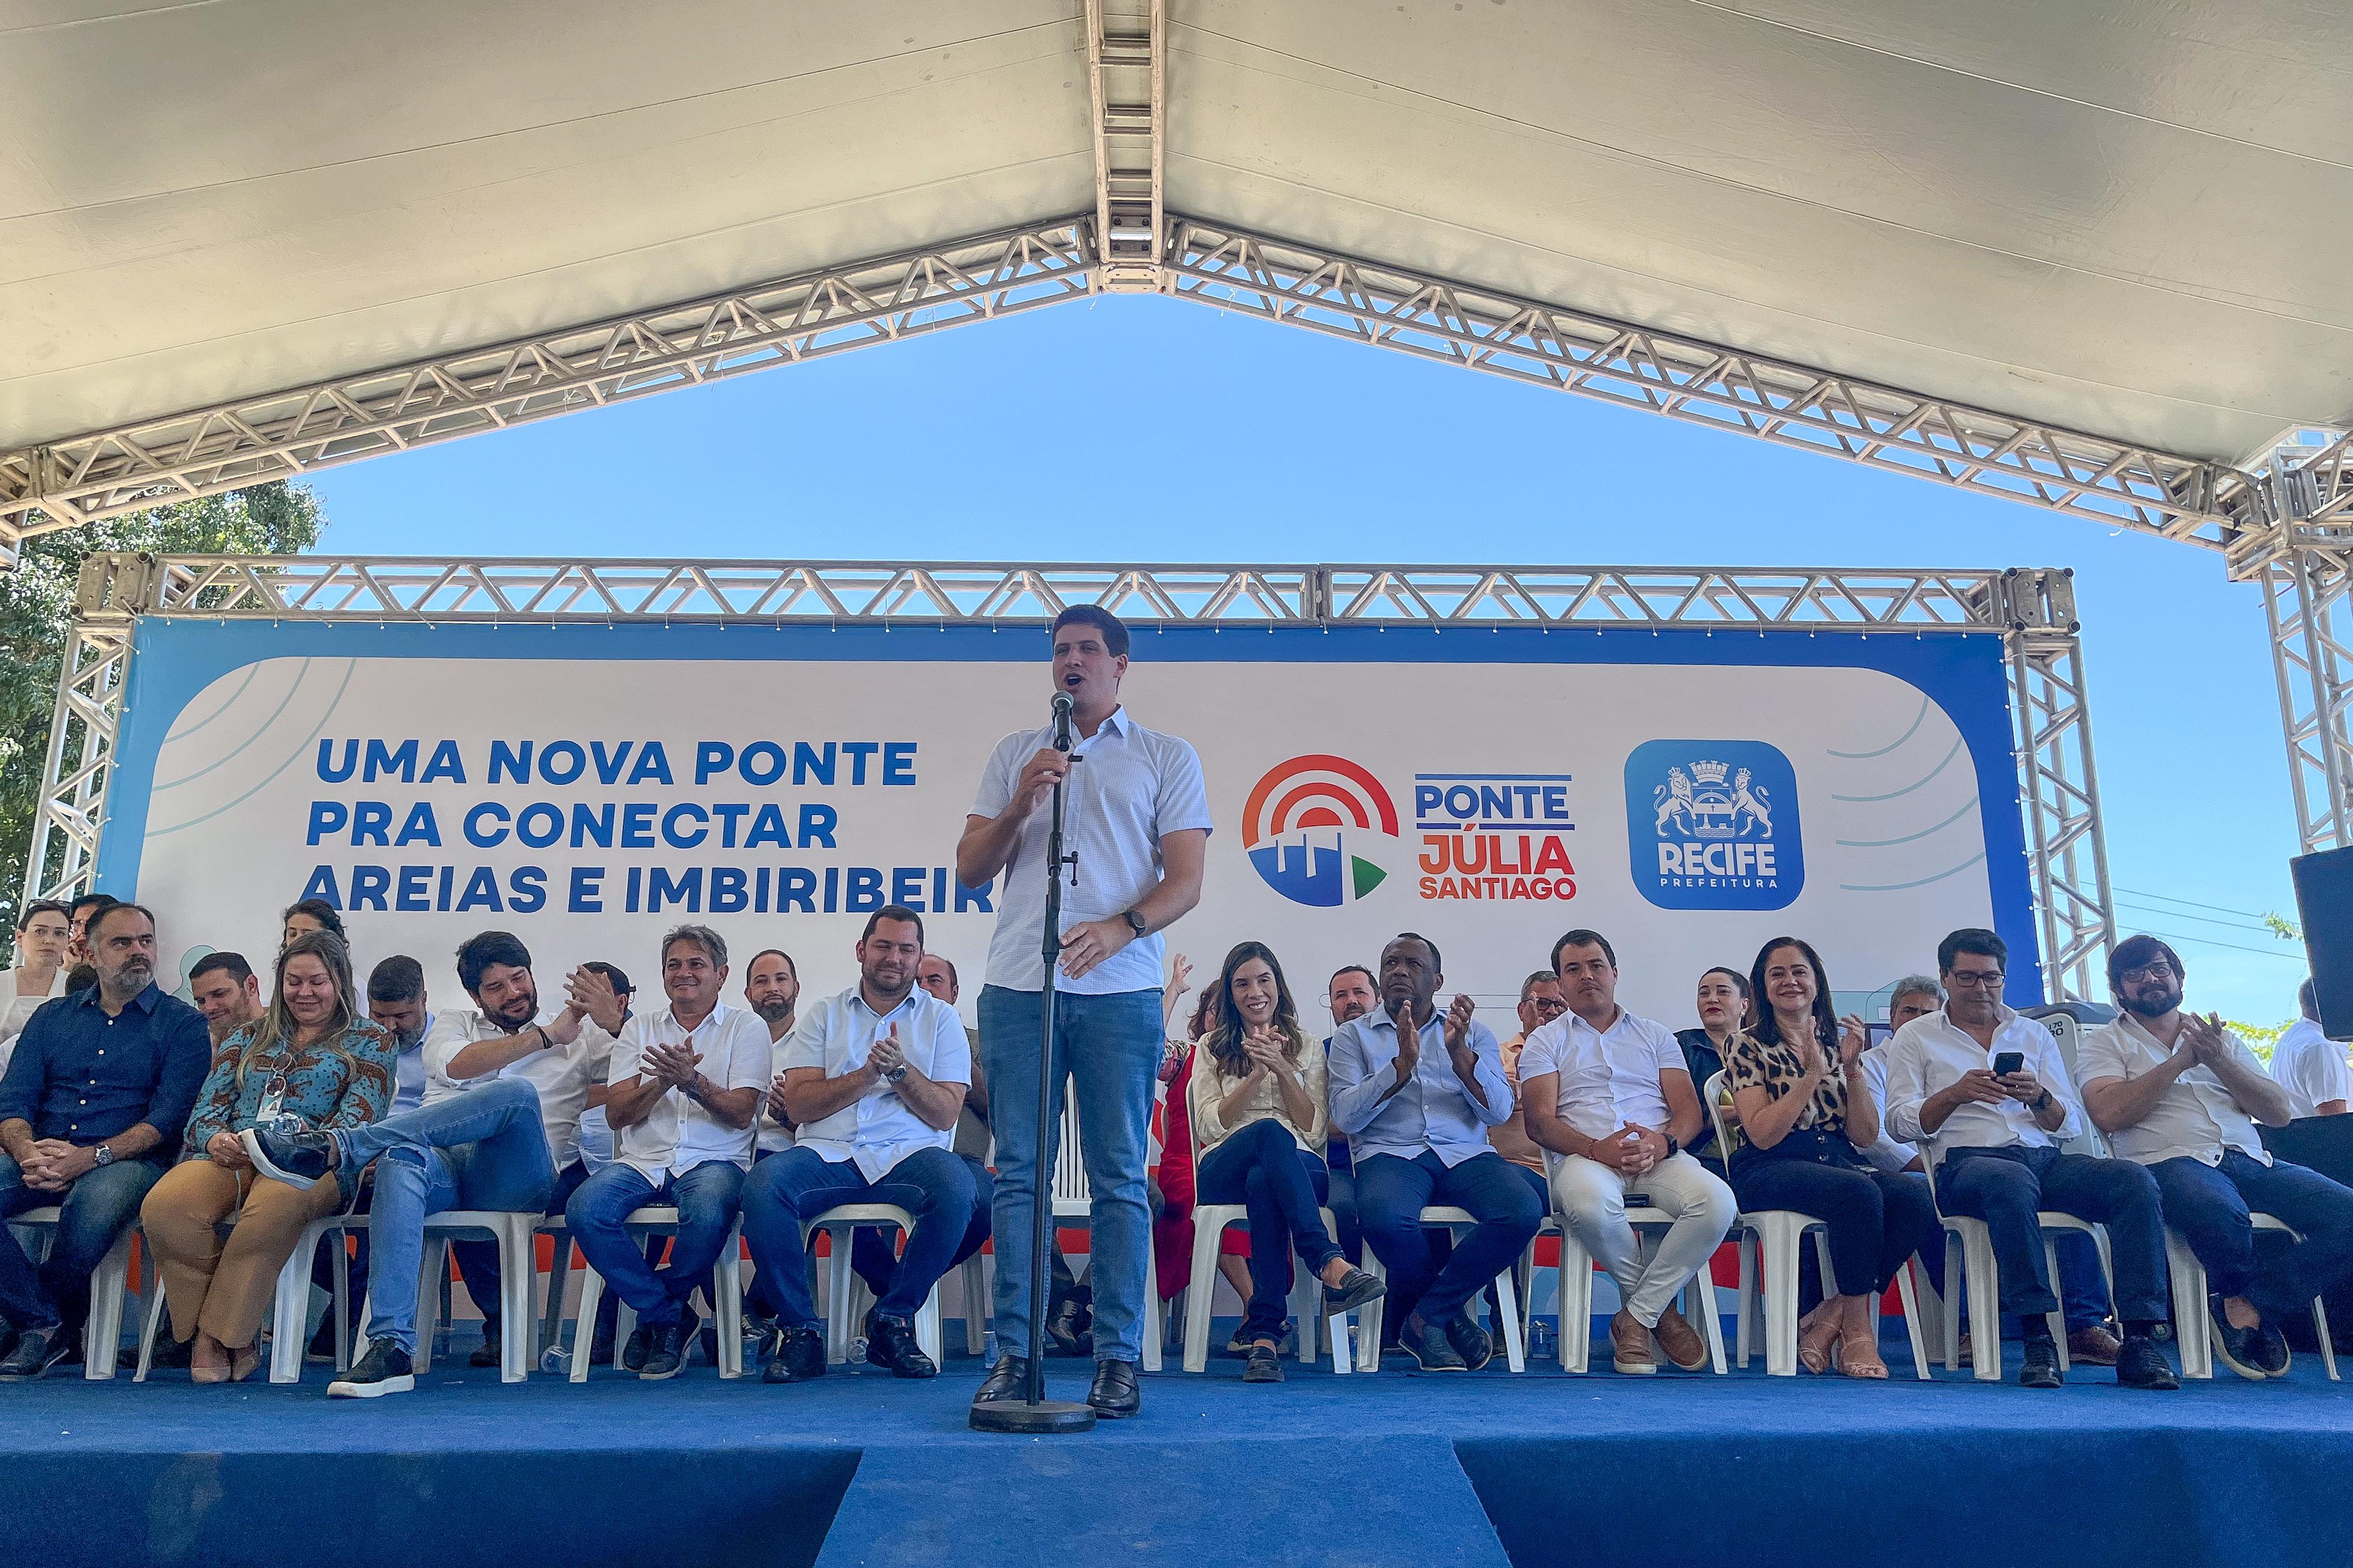 Prefeito Joo Campos anunciou detalhes sobre obra de ponte  (Foto: Rafael Vieira/ Diario de Pernambuco)